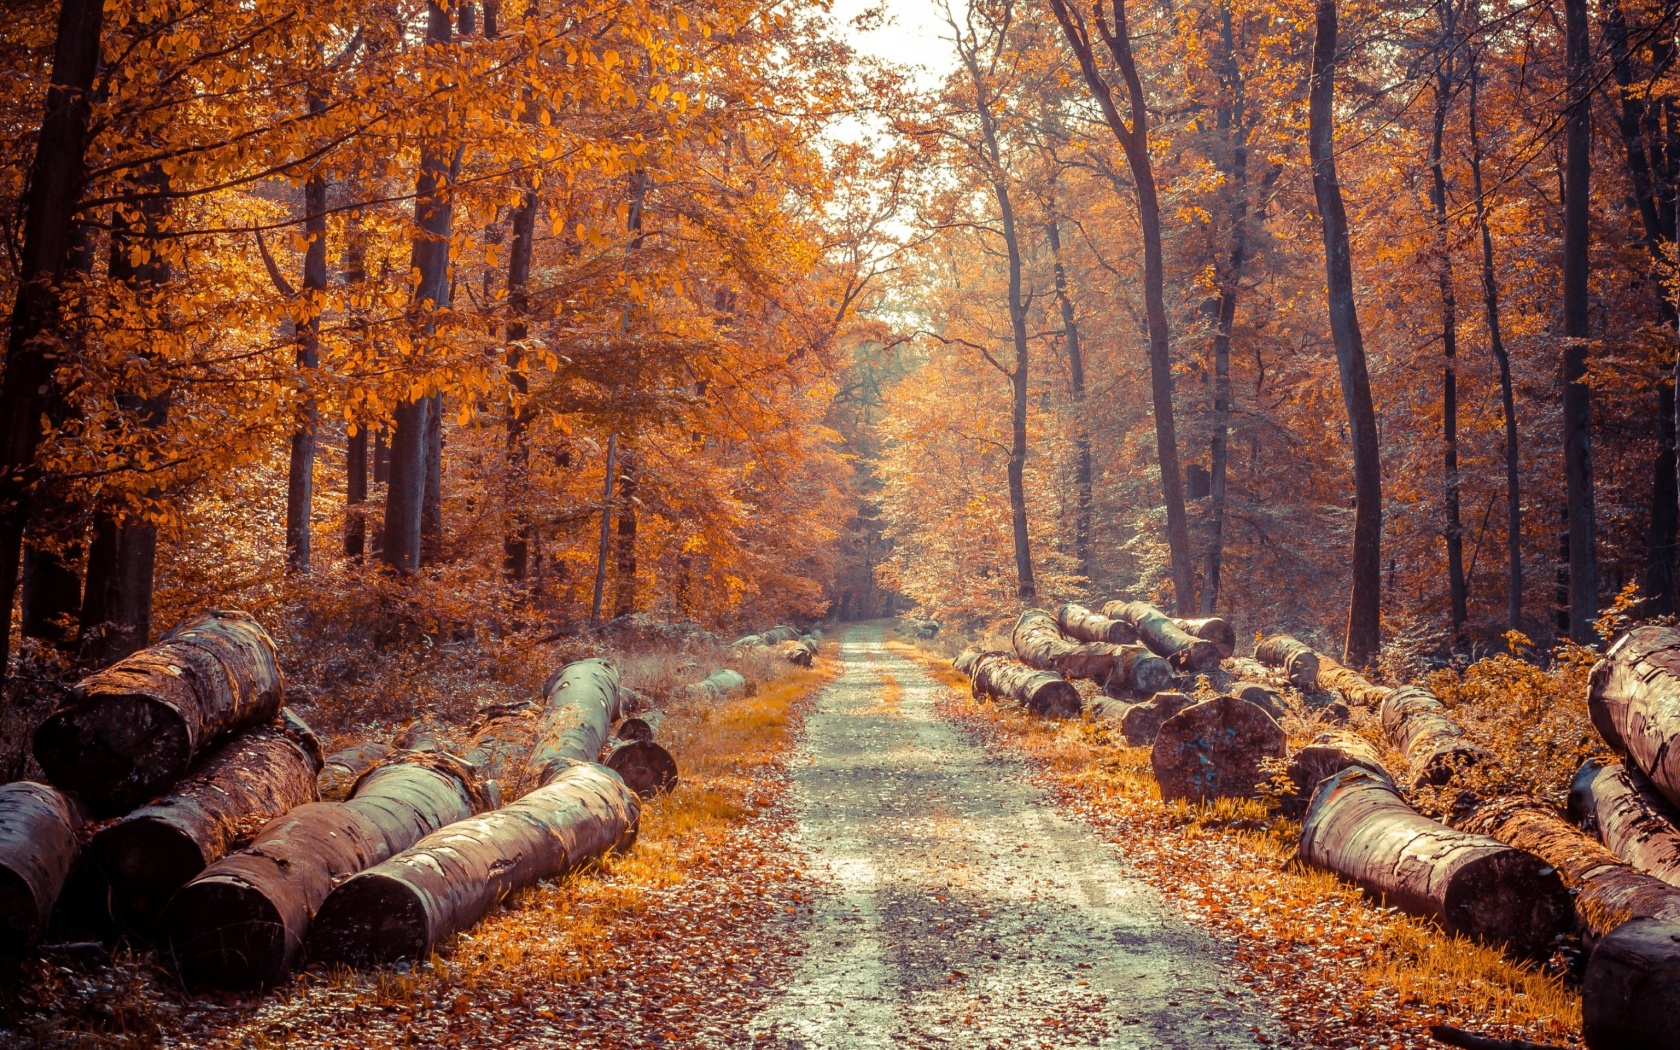 Das Road in the wild autumn forest Wallpaper 1680x1050